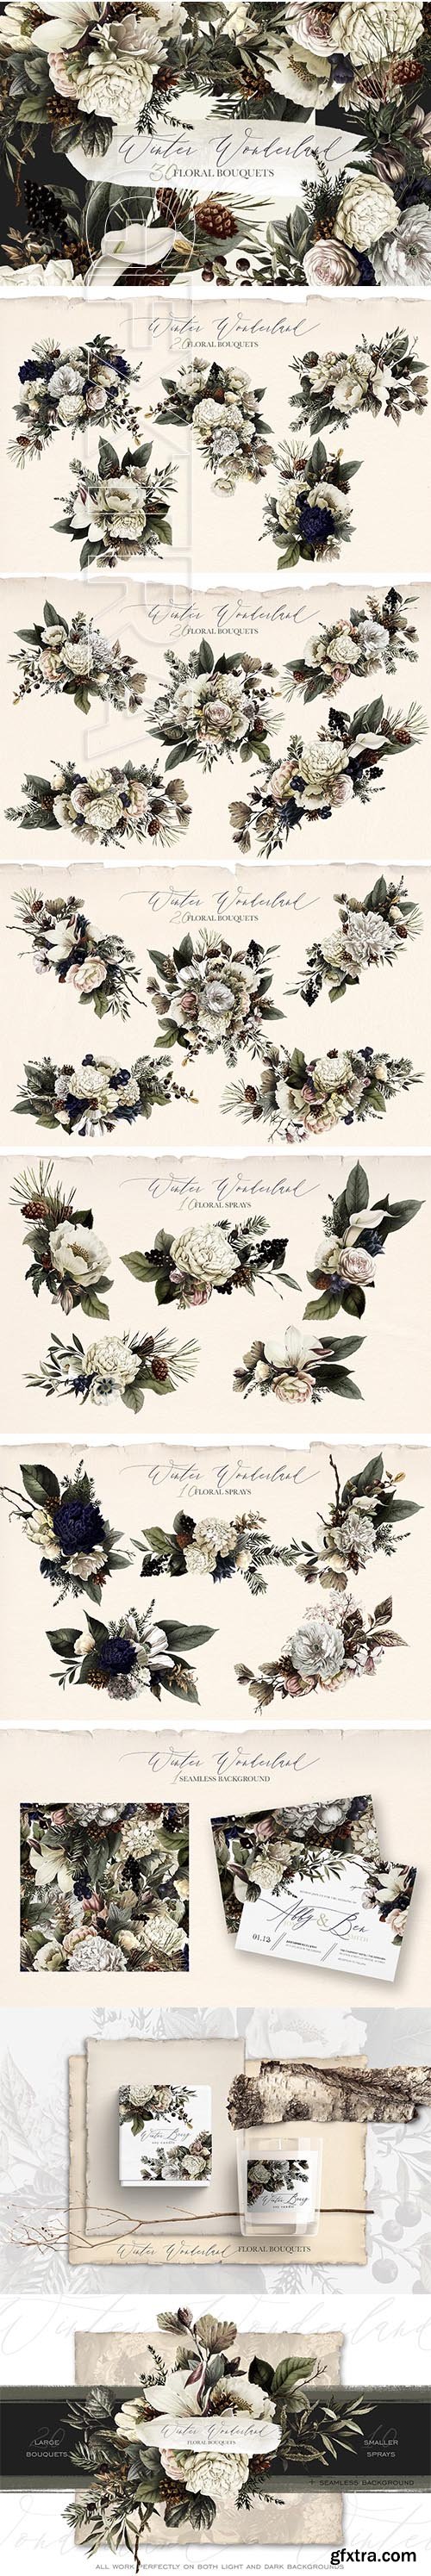 CreativeMarket - Winter Wonderland Floral Bouquets 2848096